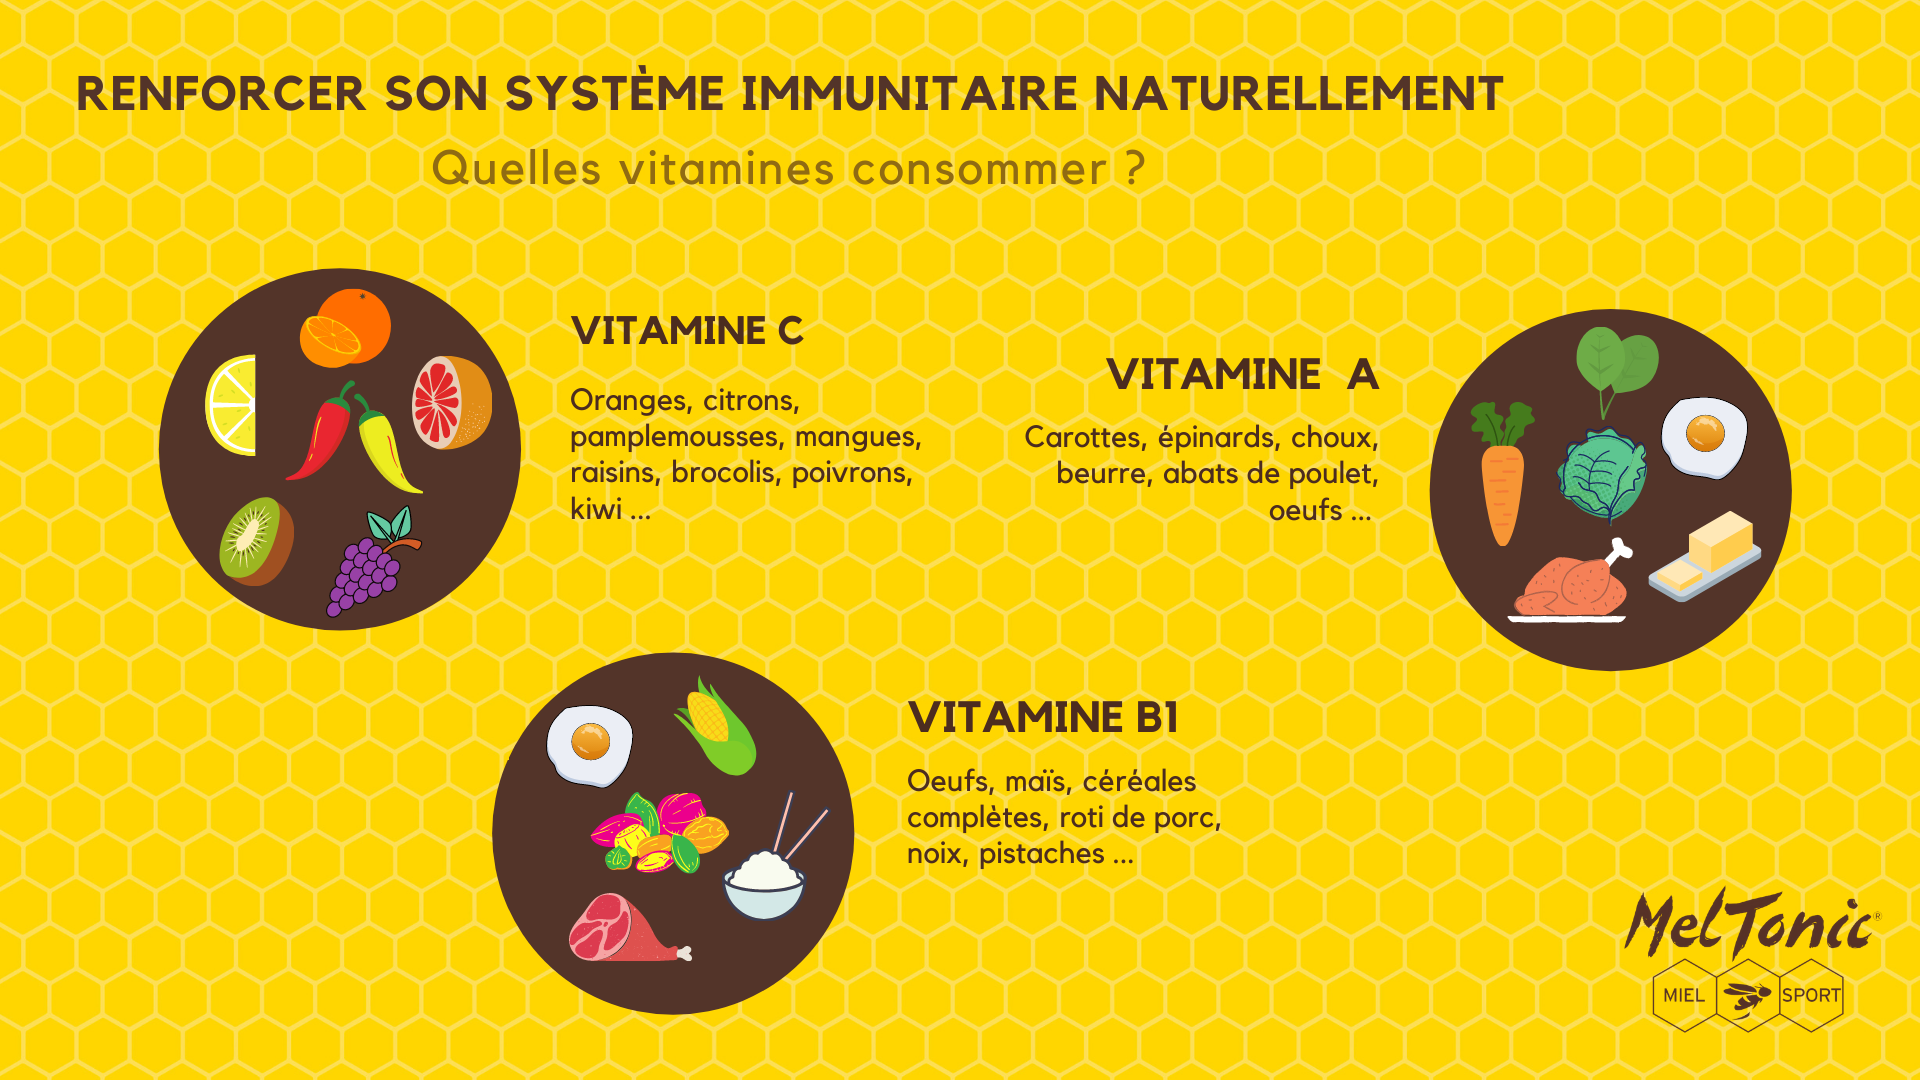 Renforcer son système immunitaire naturellement : Vitamine A, B1, C